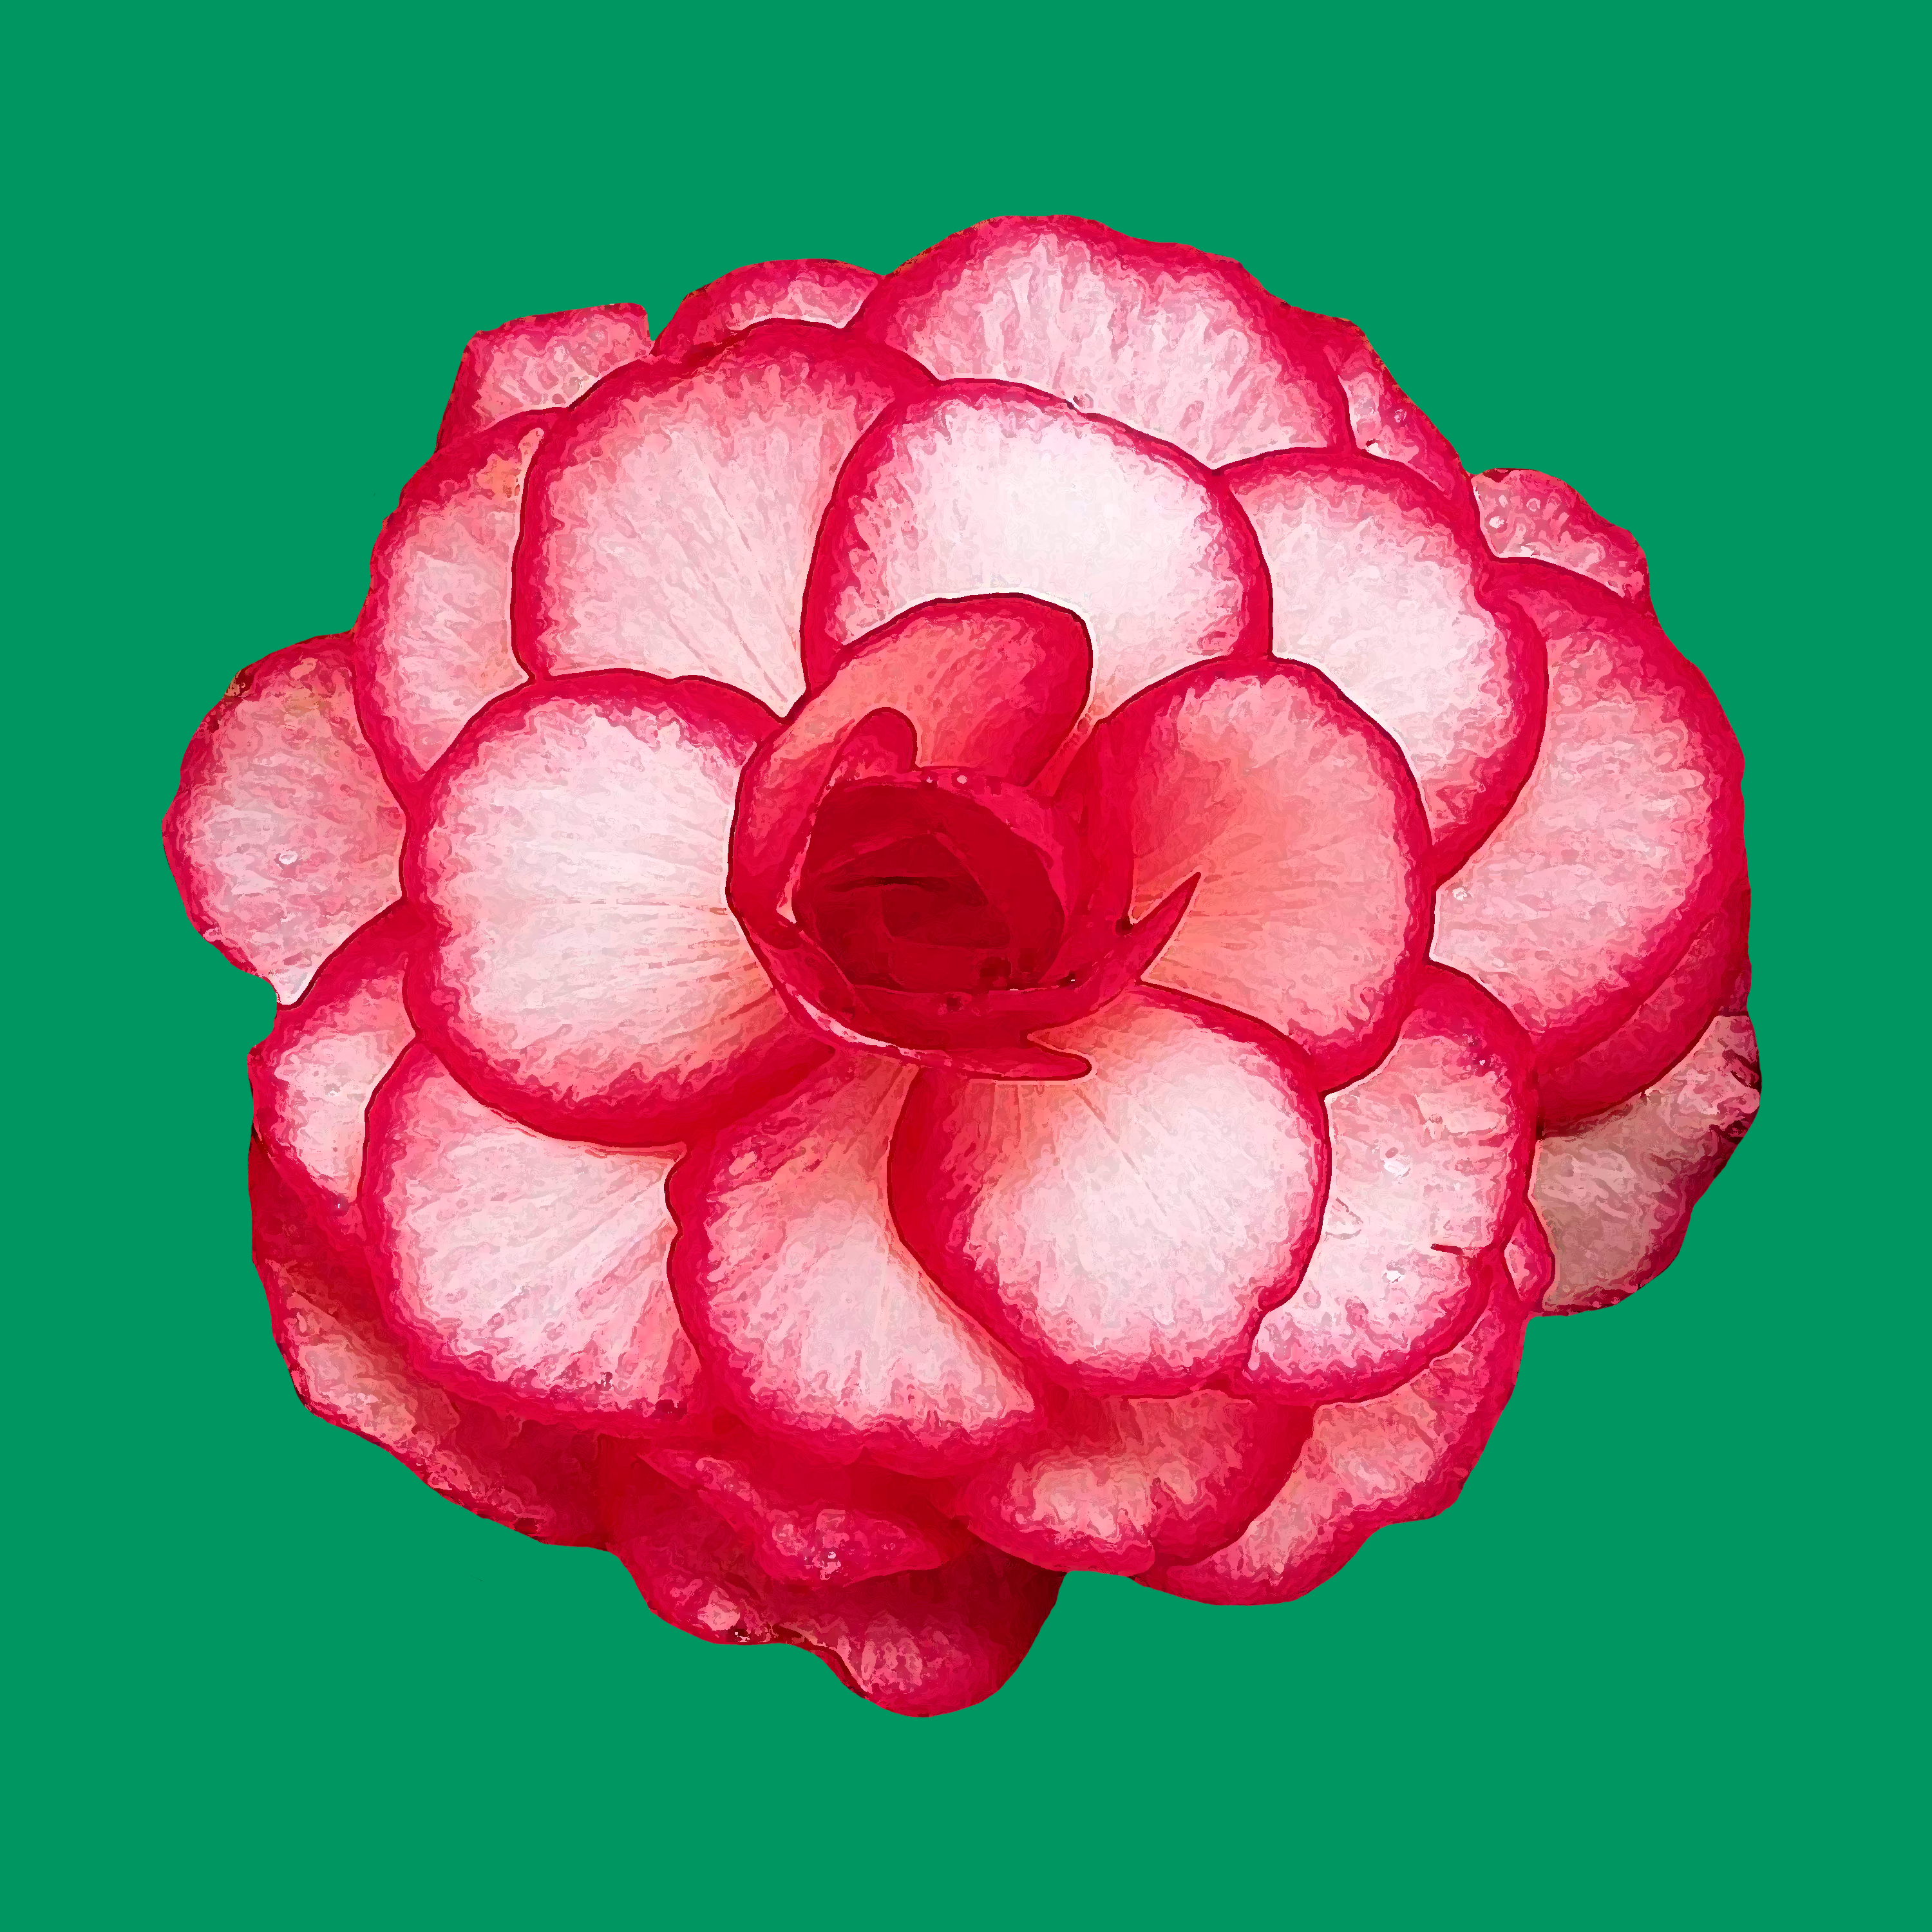 Begonia Bouton De Rose